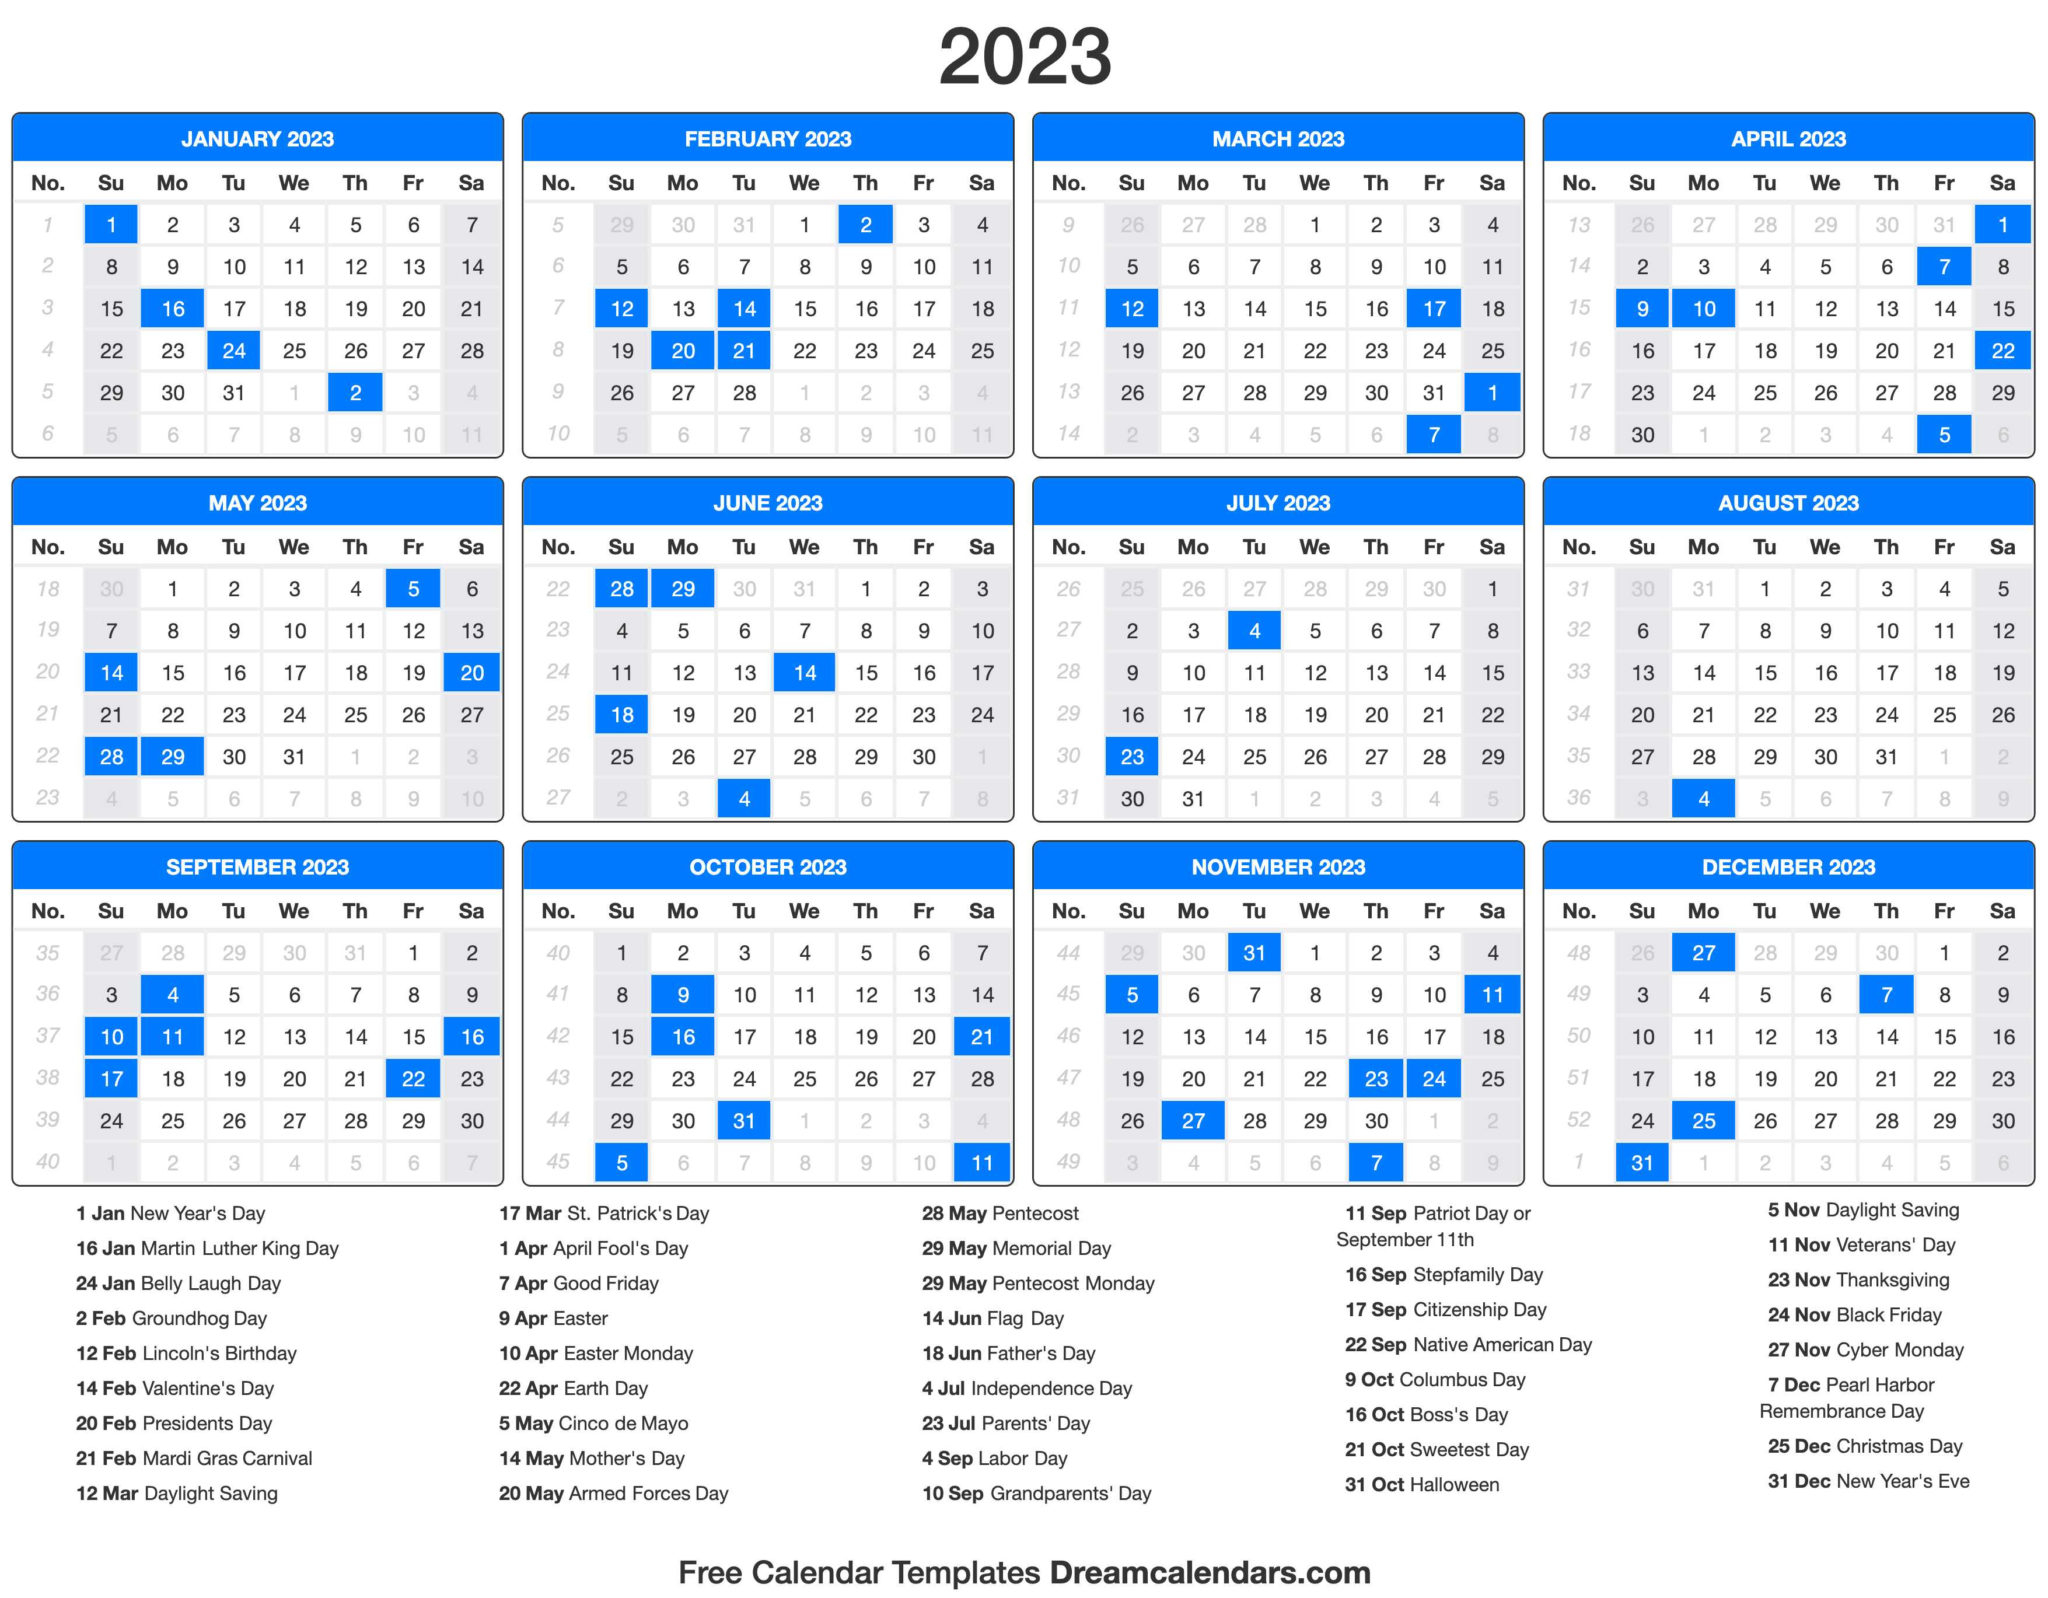 jewish-holidays-2023-calendar-may-2023-calendar-rezfoods-resep